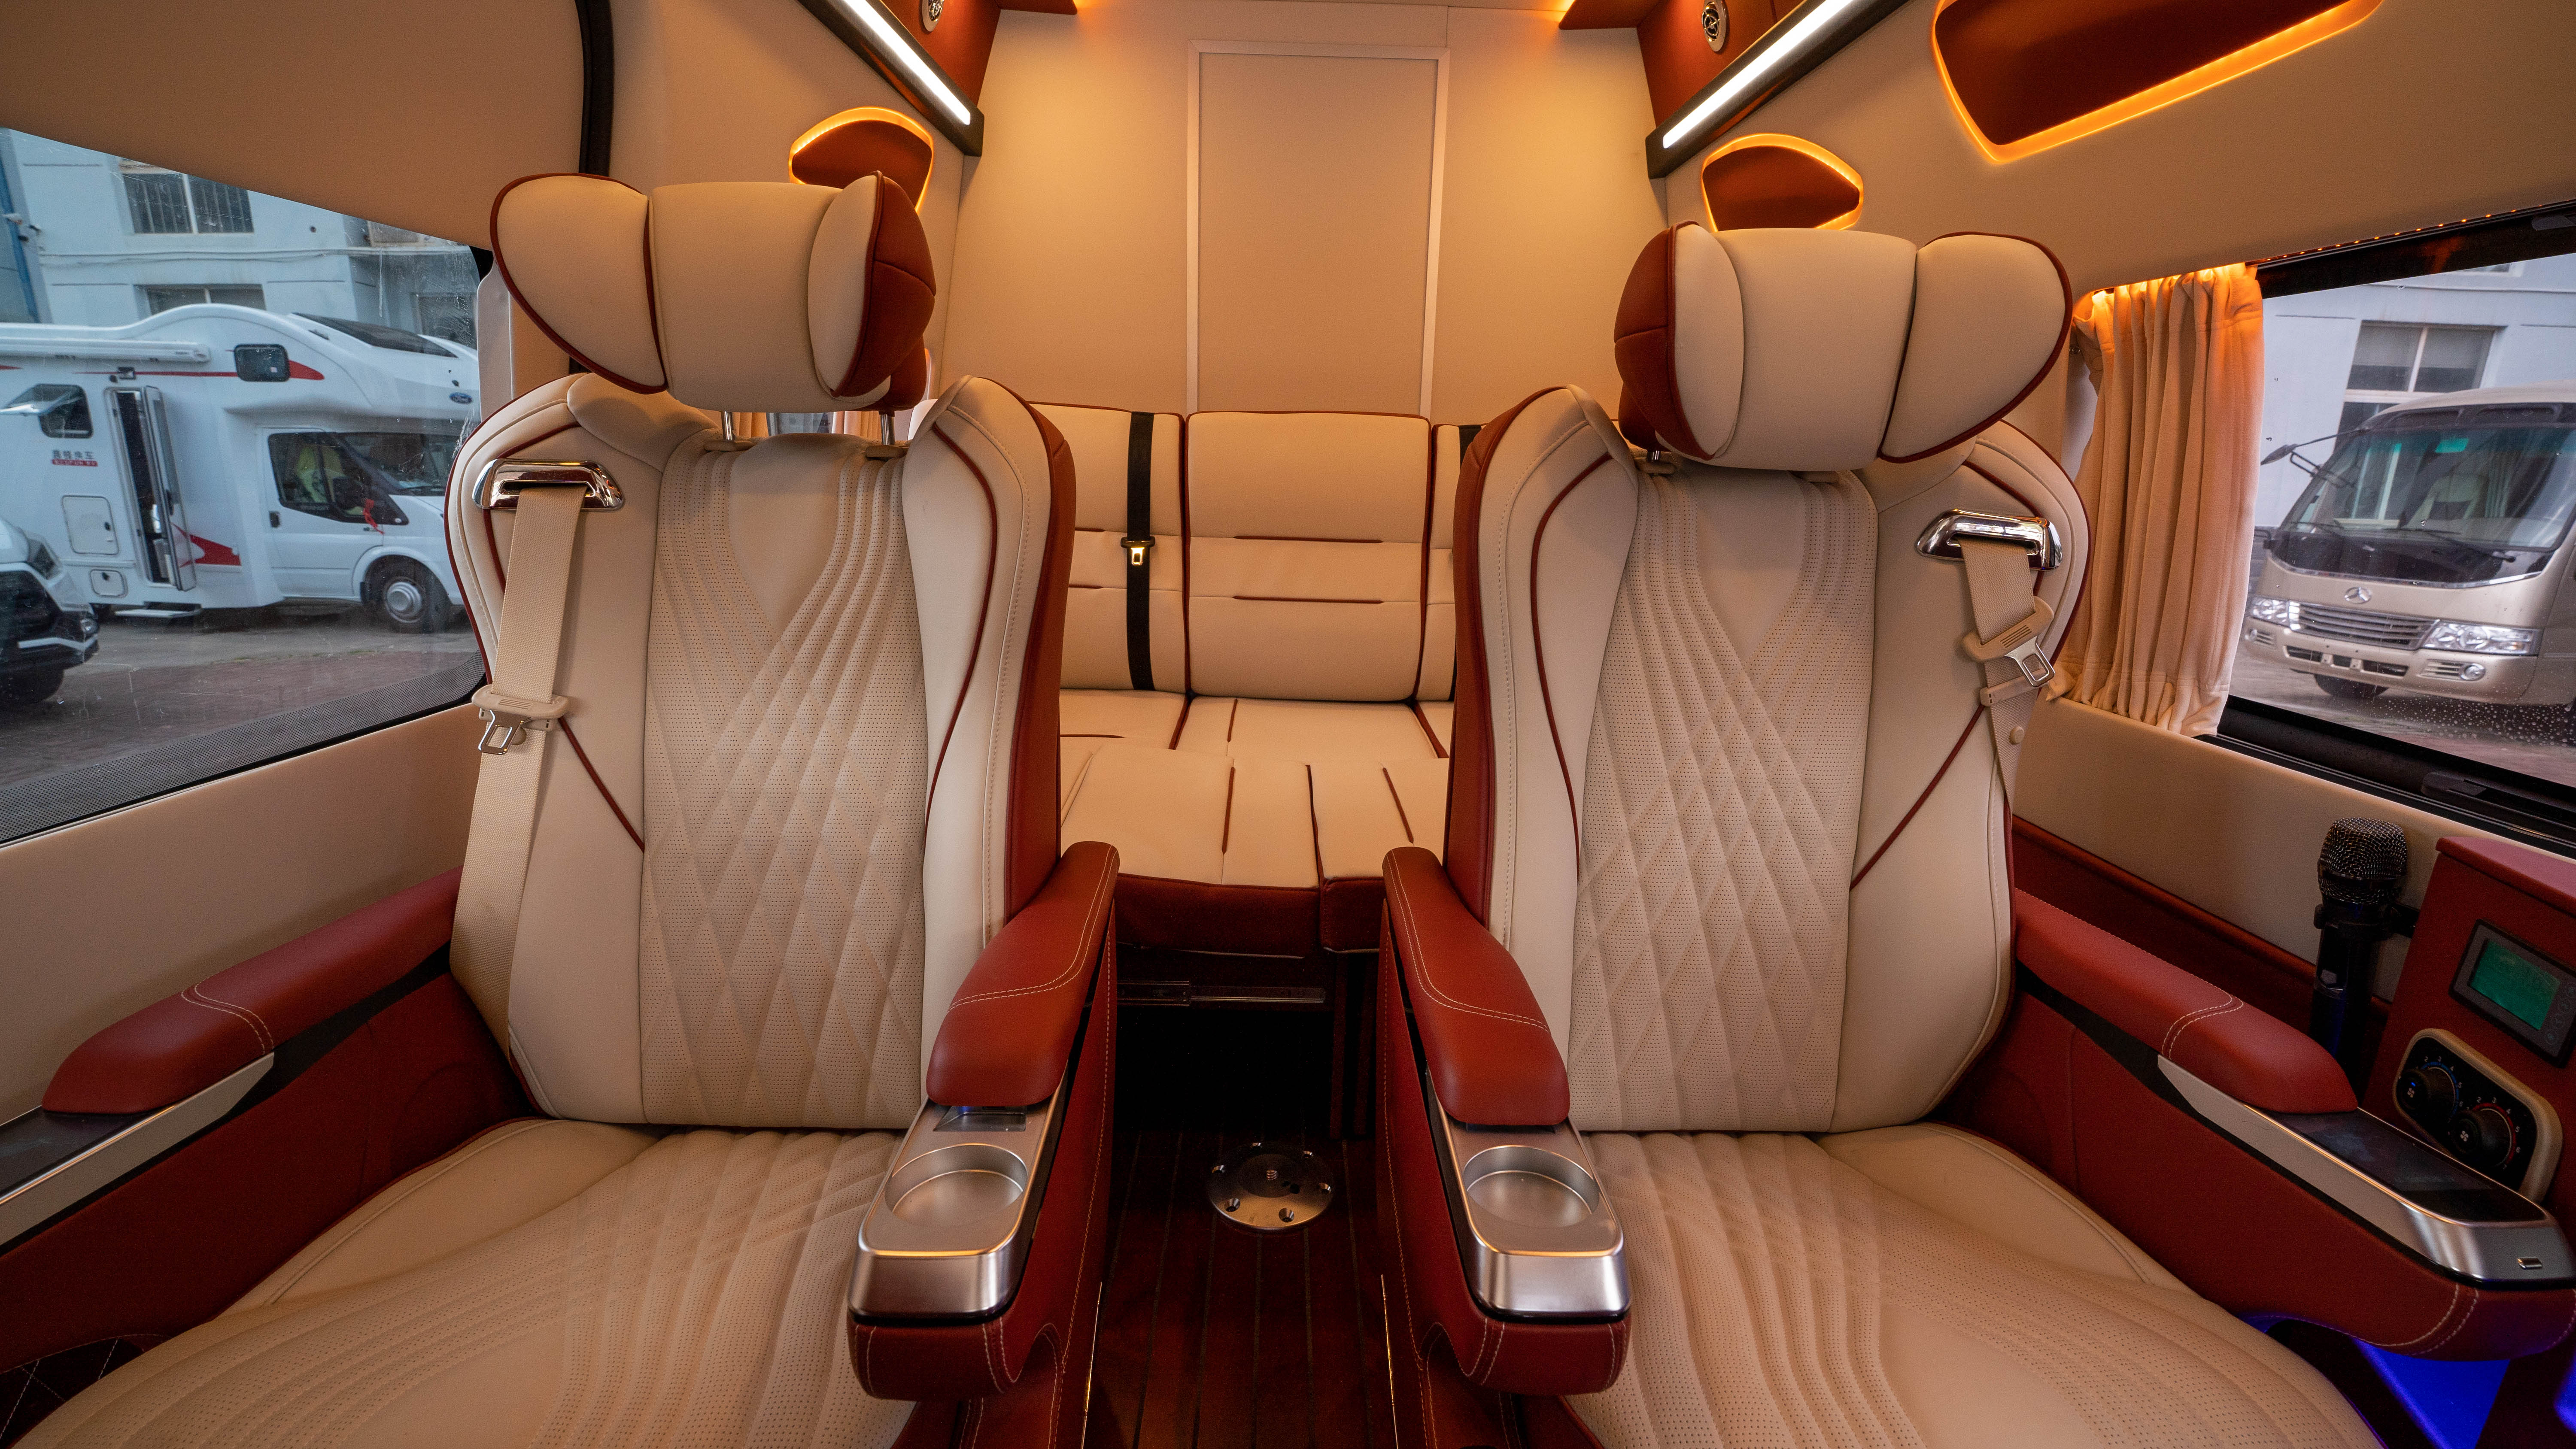 48V电路系统＋U型沙发设计，趣蜂B880房车带给你百万级奢华体验